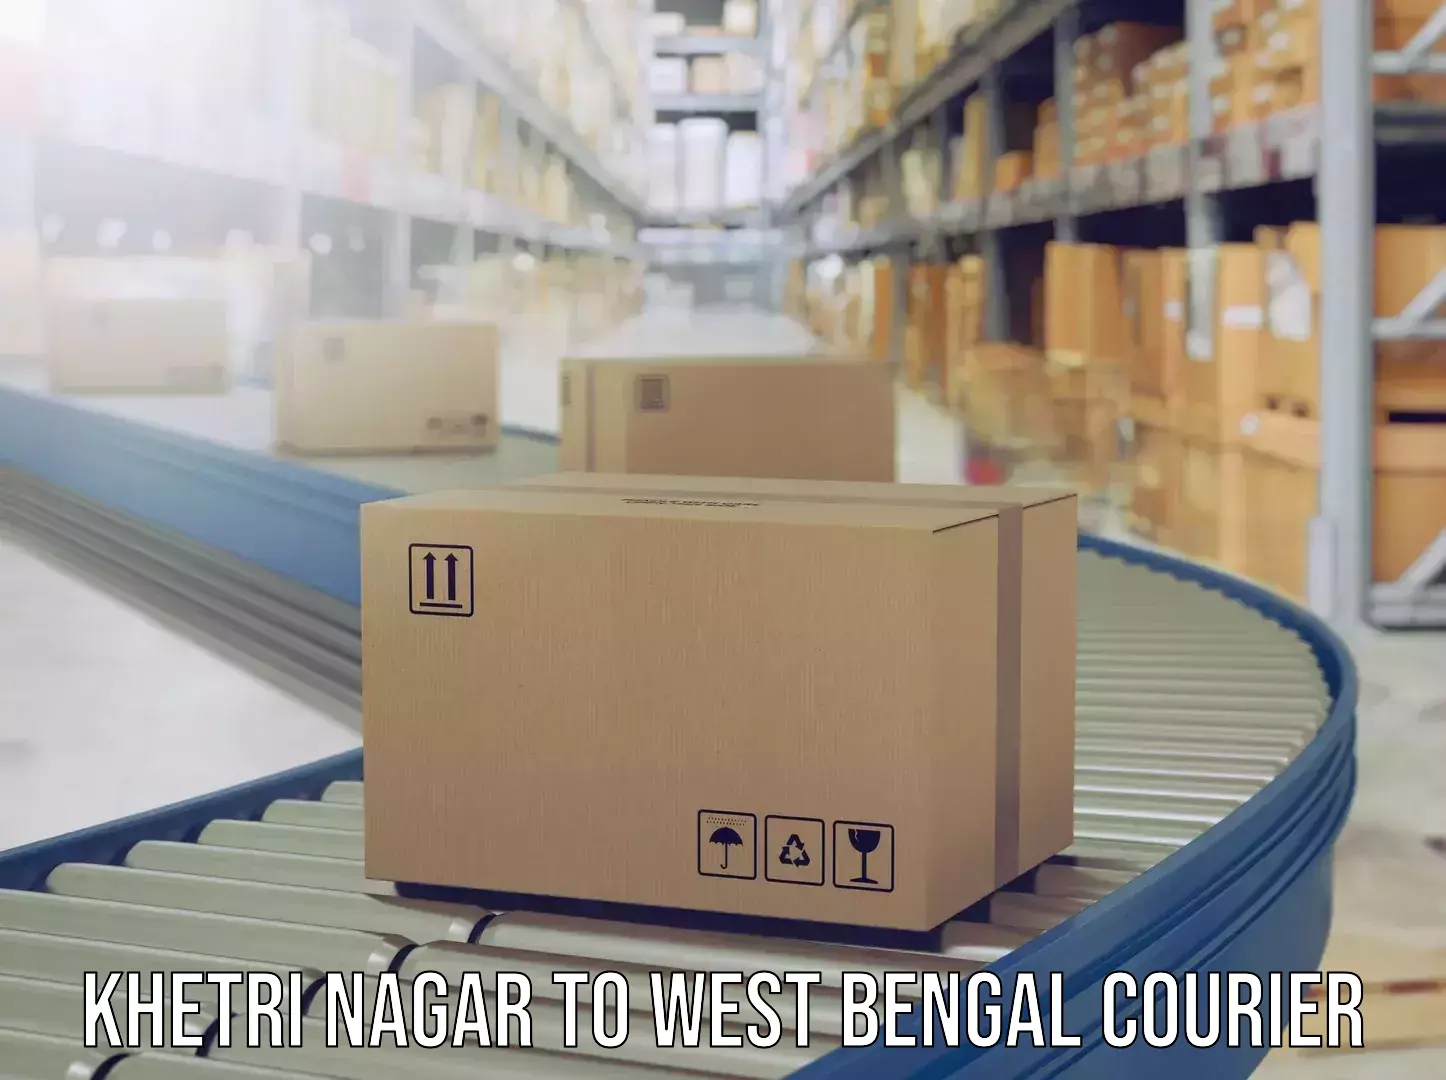 Baggage shipping rates calculator Khetri Nagar to Kalna